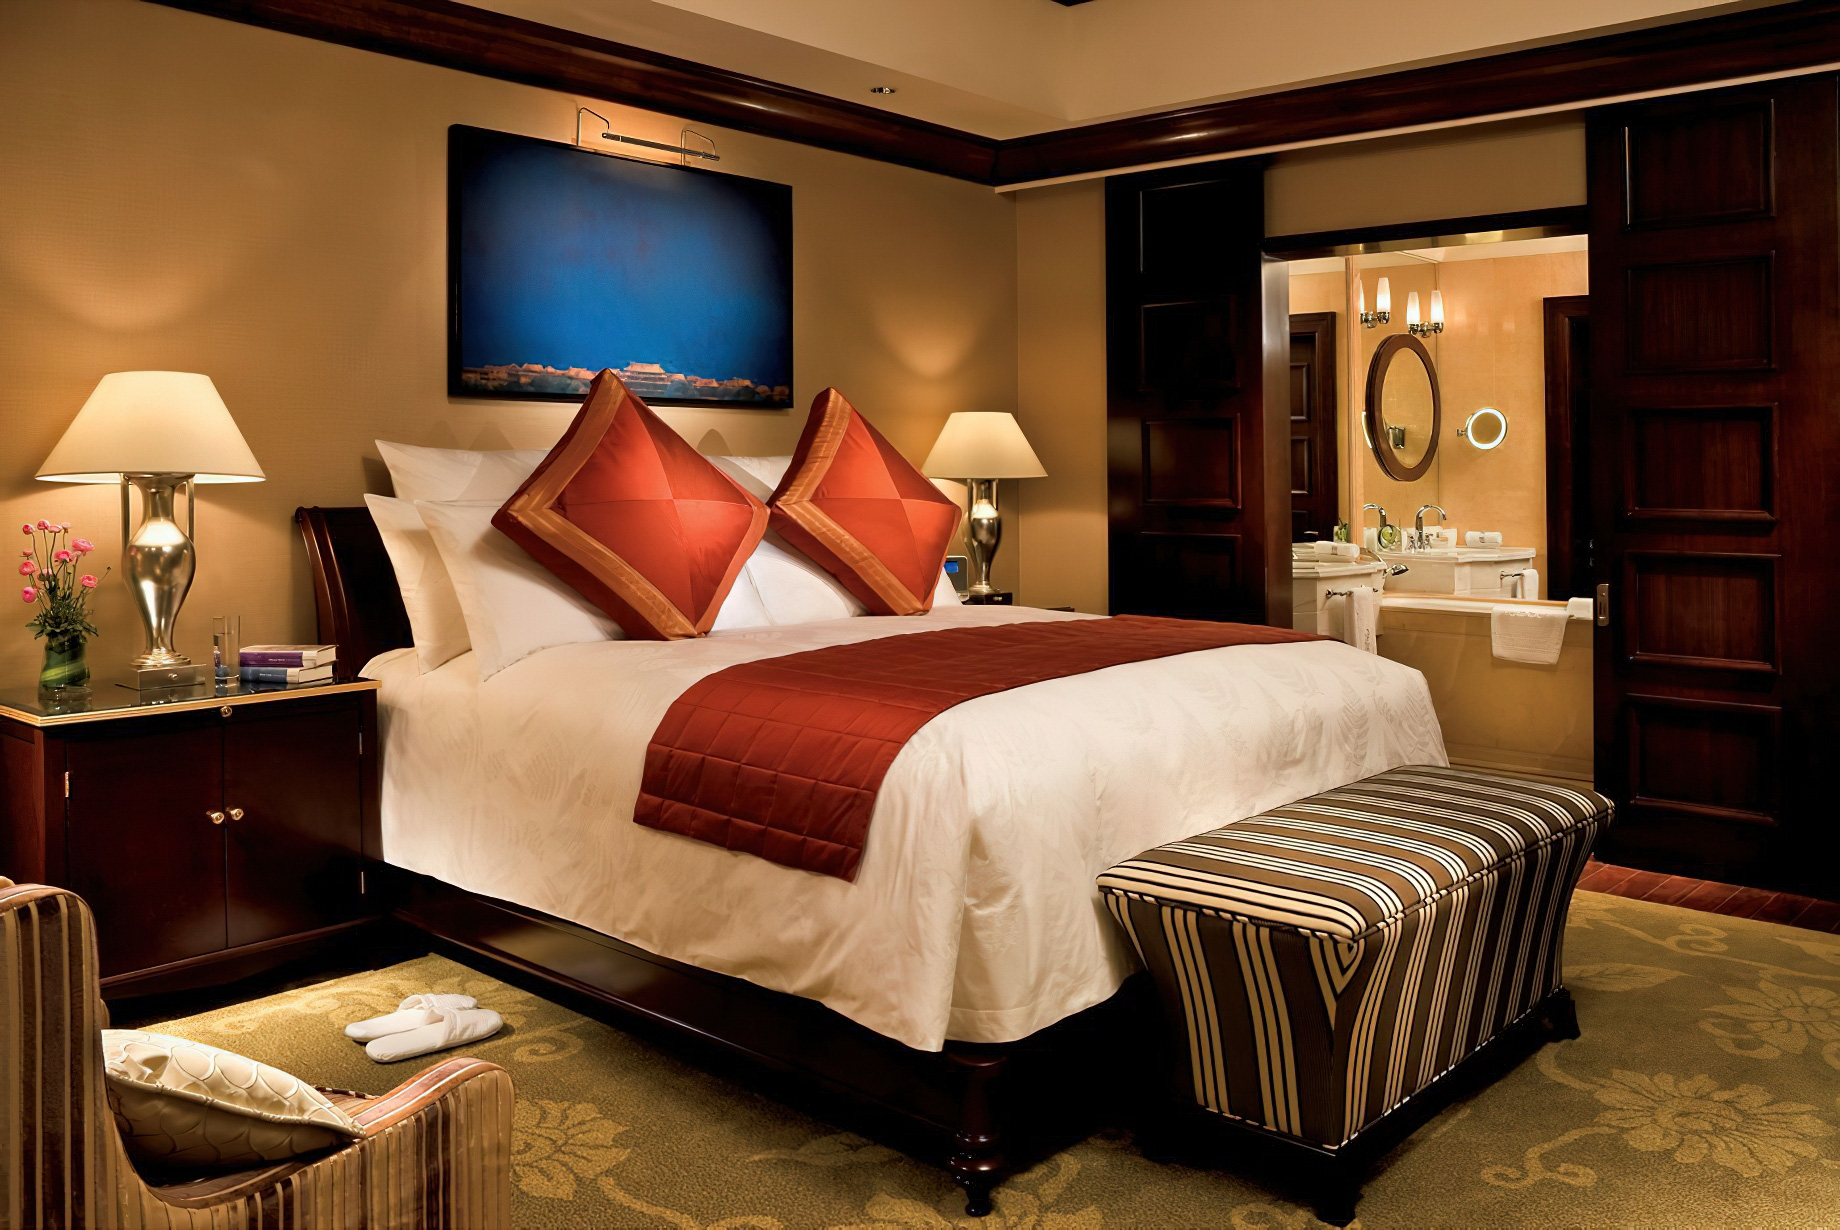 The Ritz-Carlton, Guangzhou Hotel - Guangzhou, China - One Bedroom Residence Bedroom